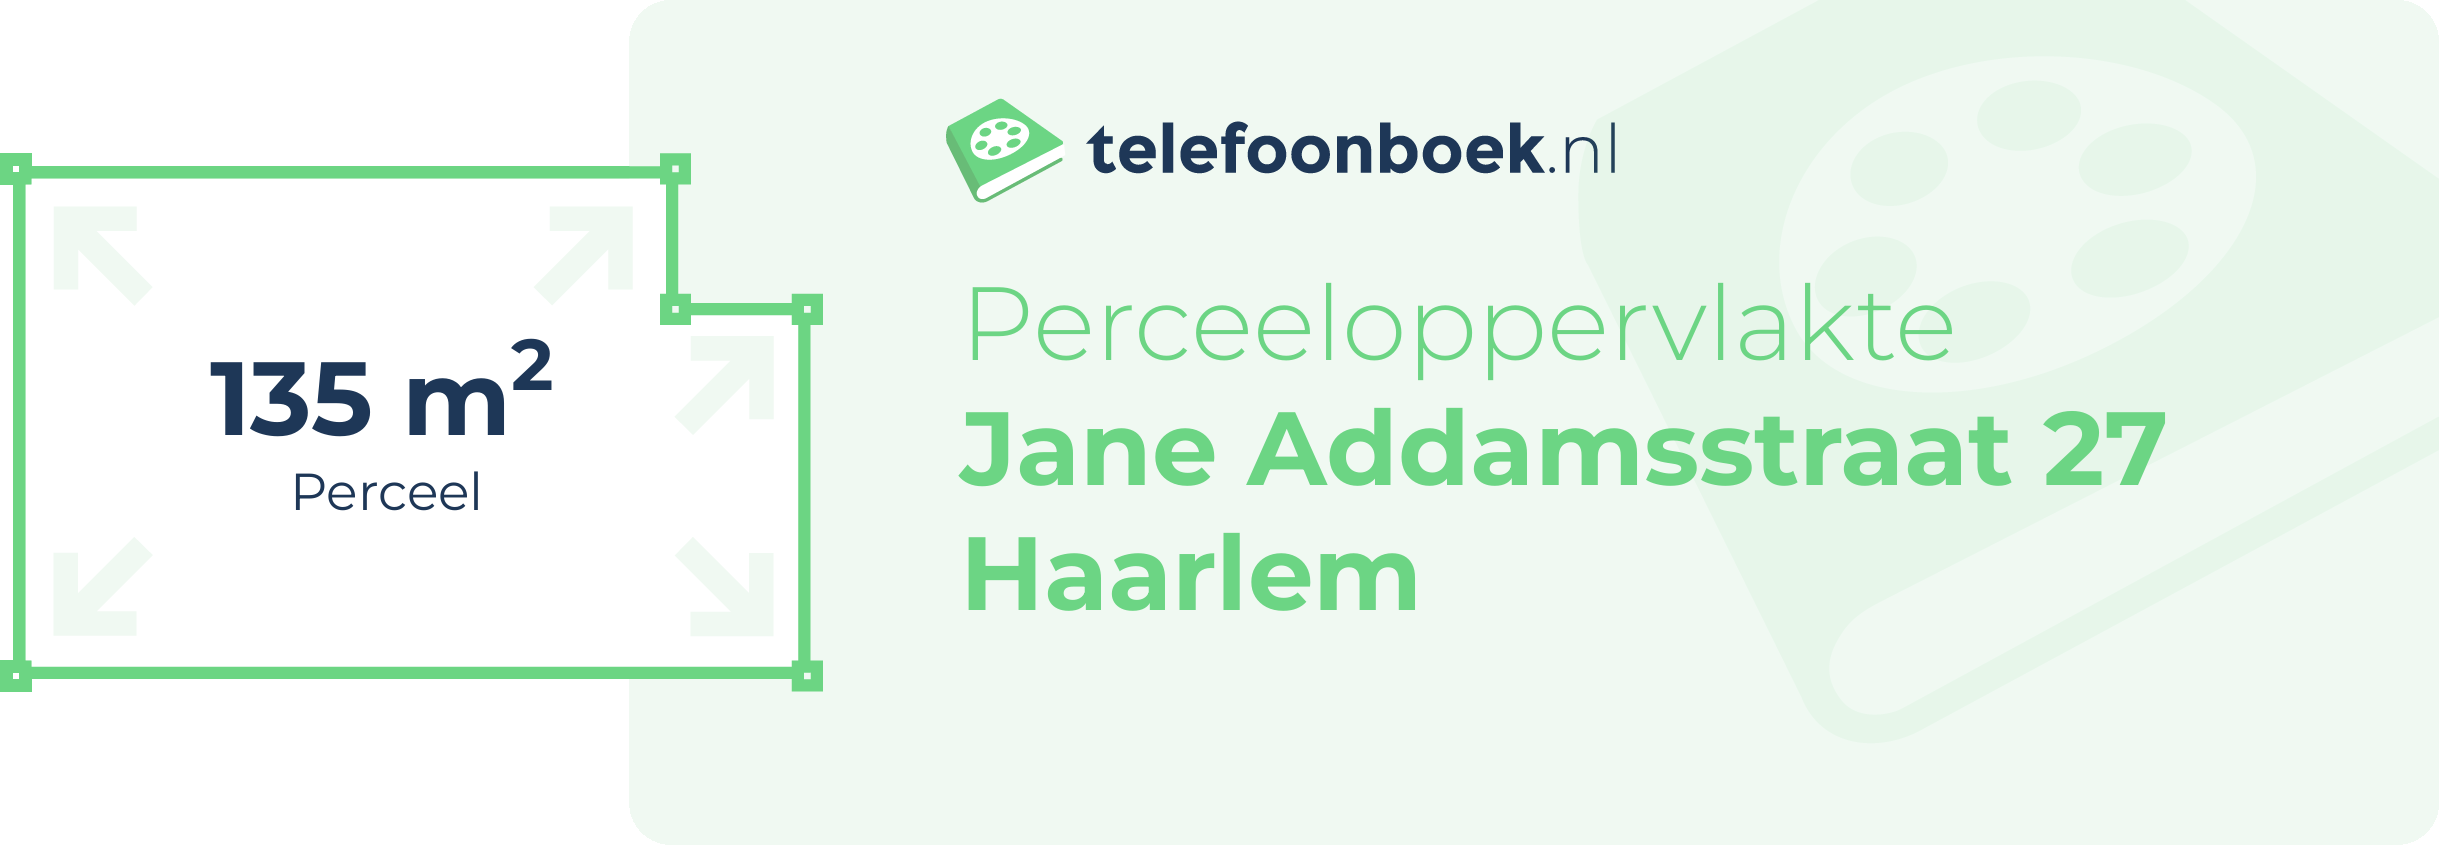 Perceeloppervlakte Jane Addamsstraat 27 Haarlem